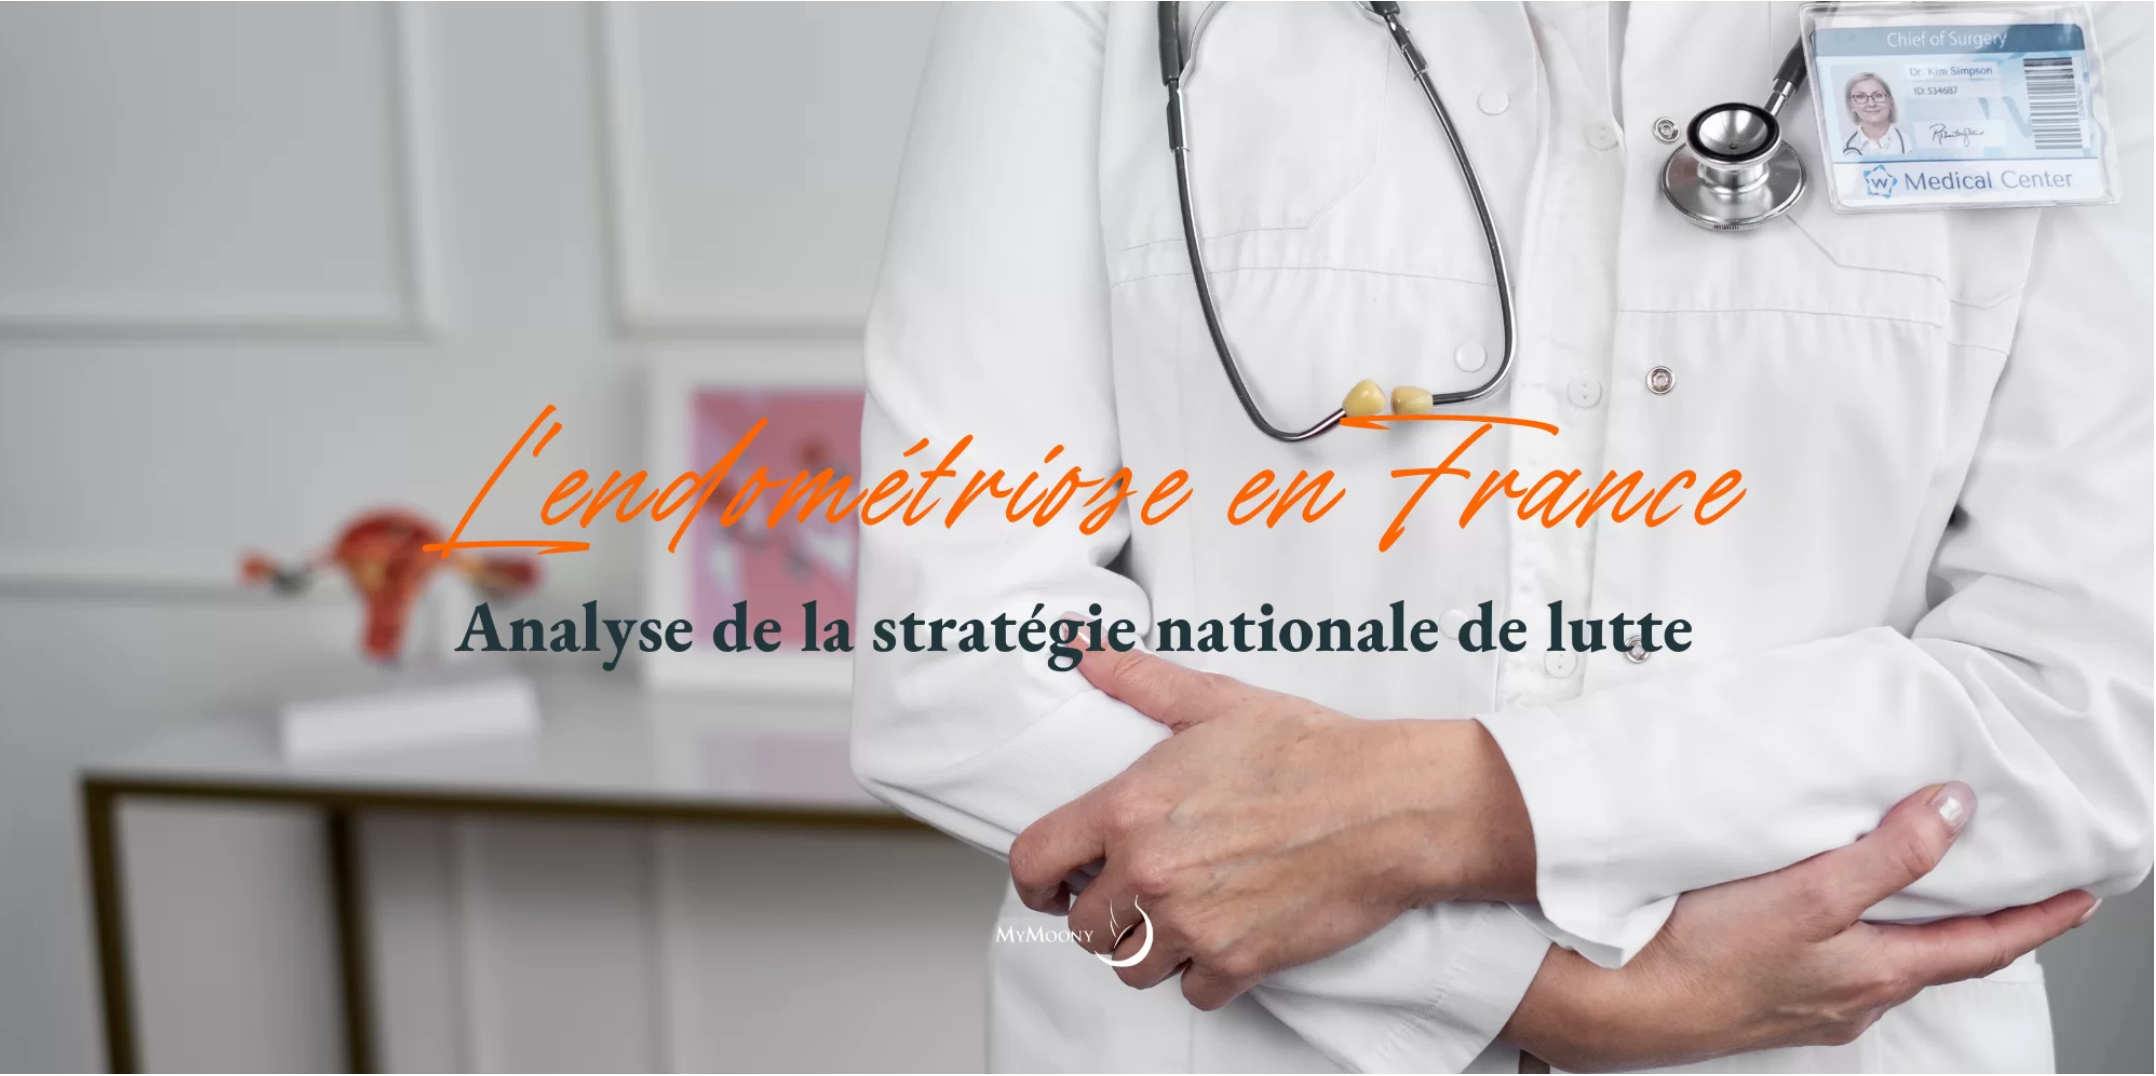 L’Endométriose en France : Analyse de la stratégie nationale de lutte